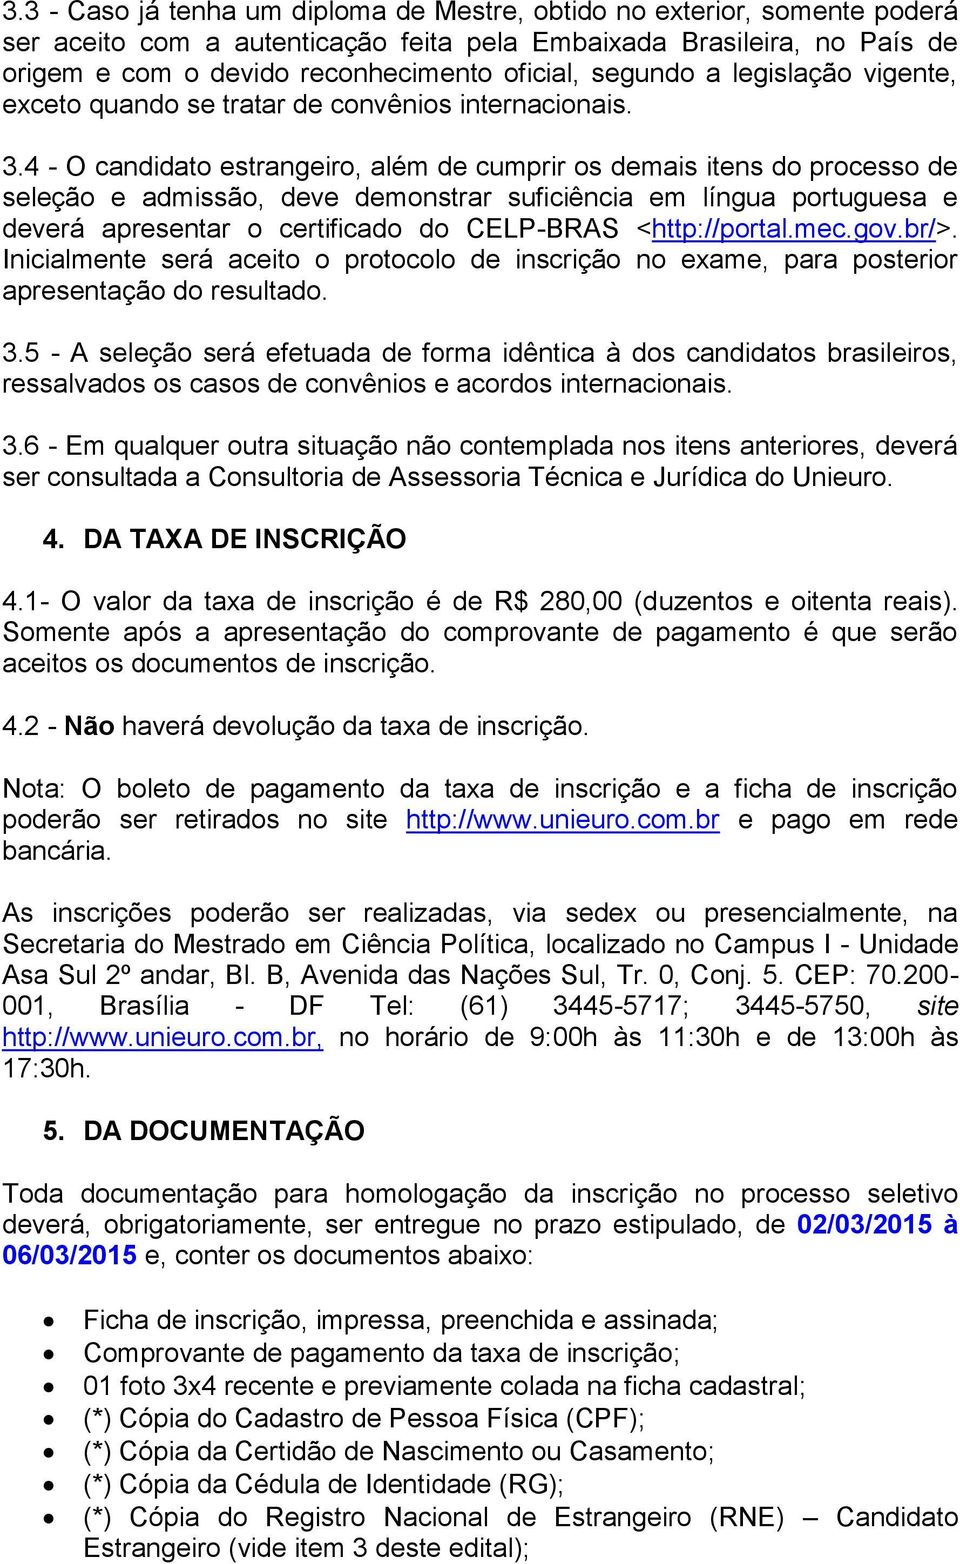 4 - O candidato estrangeiro, além de cumprir os demais itens do processo de seleção e admissão, deve demonstrar suficiência em língua portuguesa e deverá apresentar o certificado do CELP-BRAS